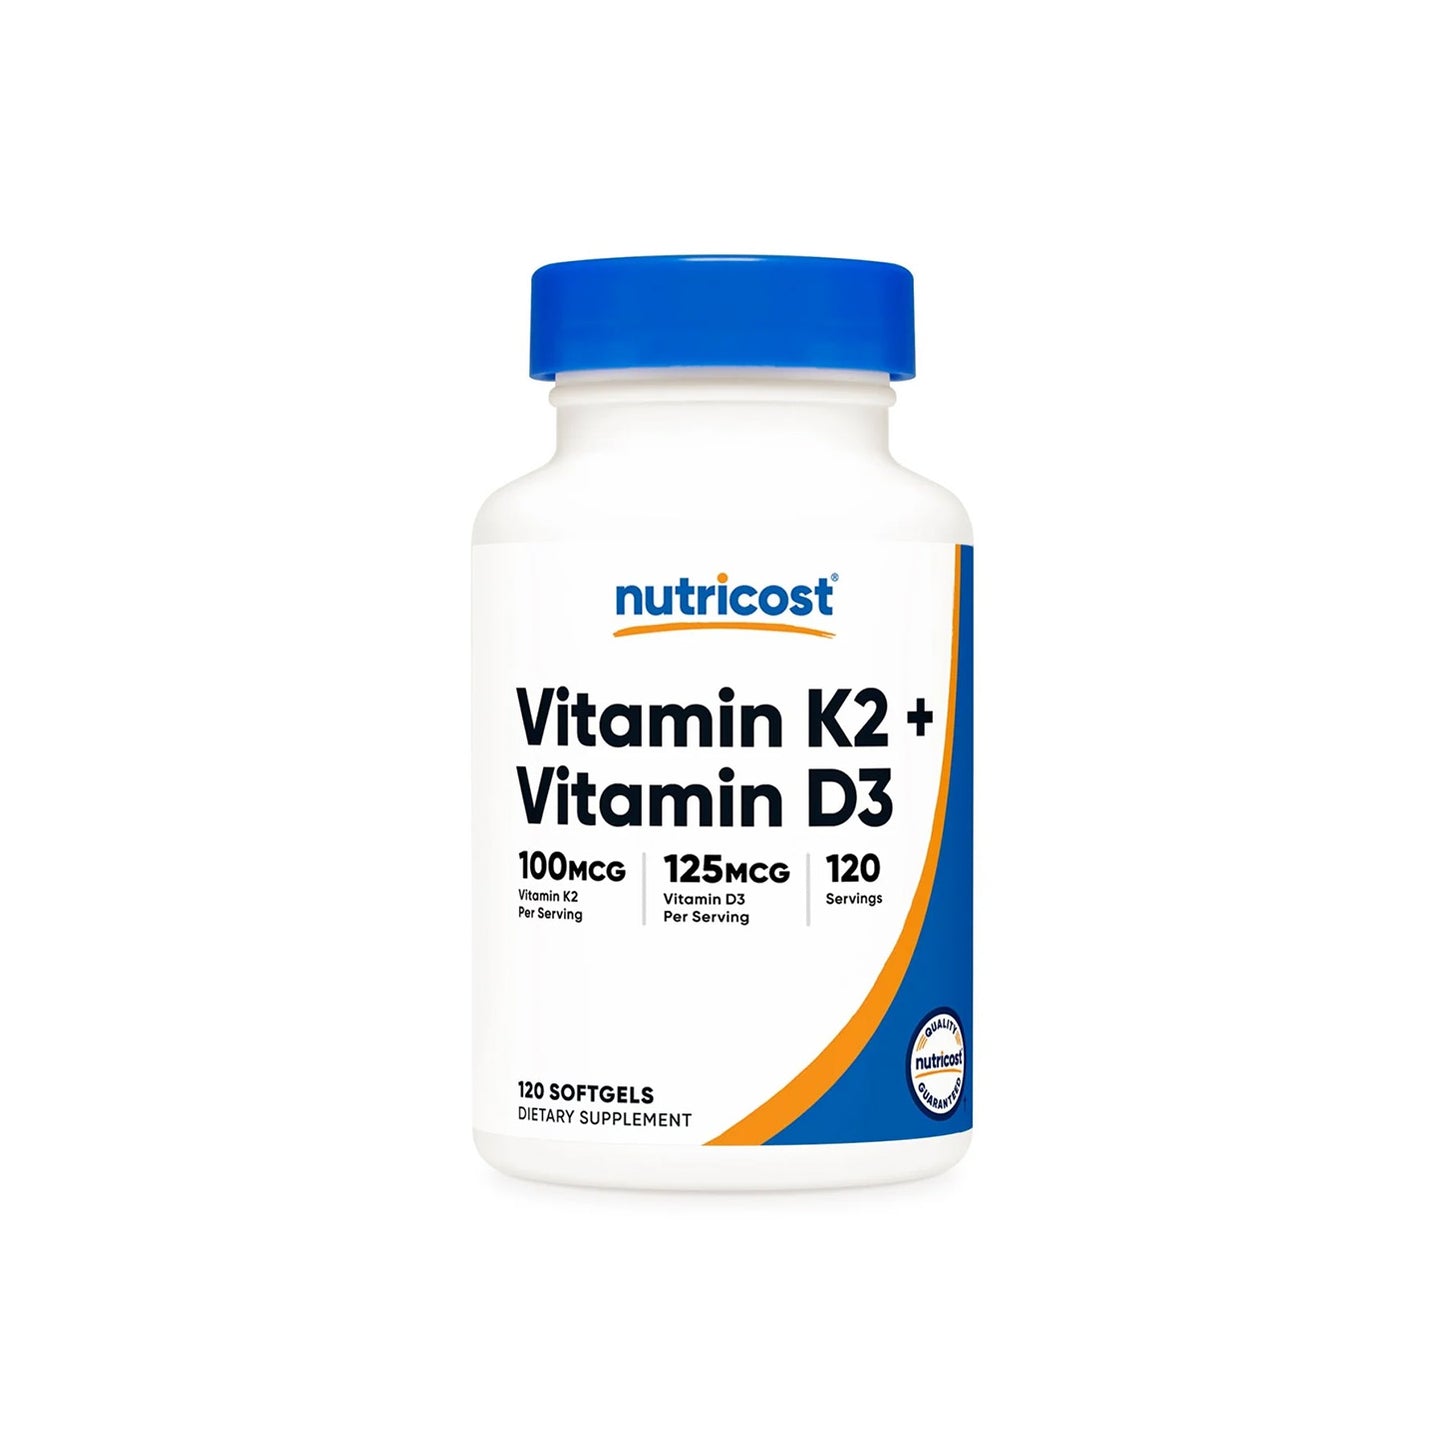 Optimiza tu Salud Ósea con Vitamin K2 + Vitamin D3 de Nutricost | ProHealth Shop [Panamá]